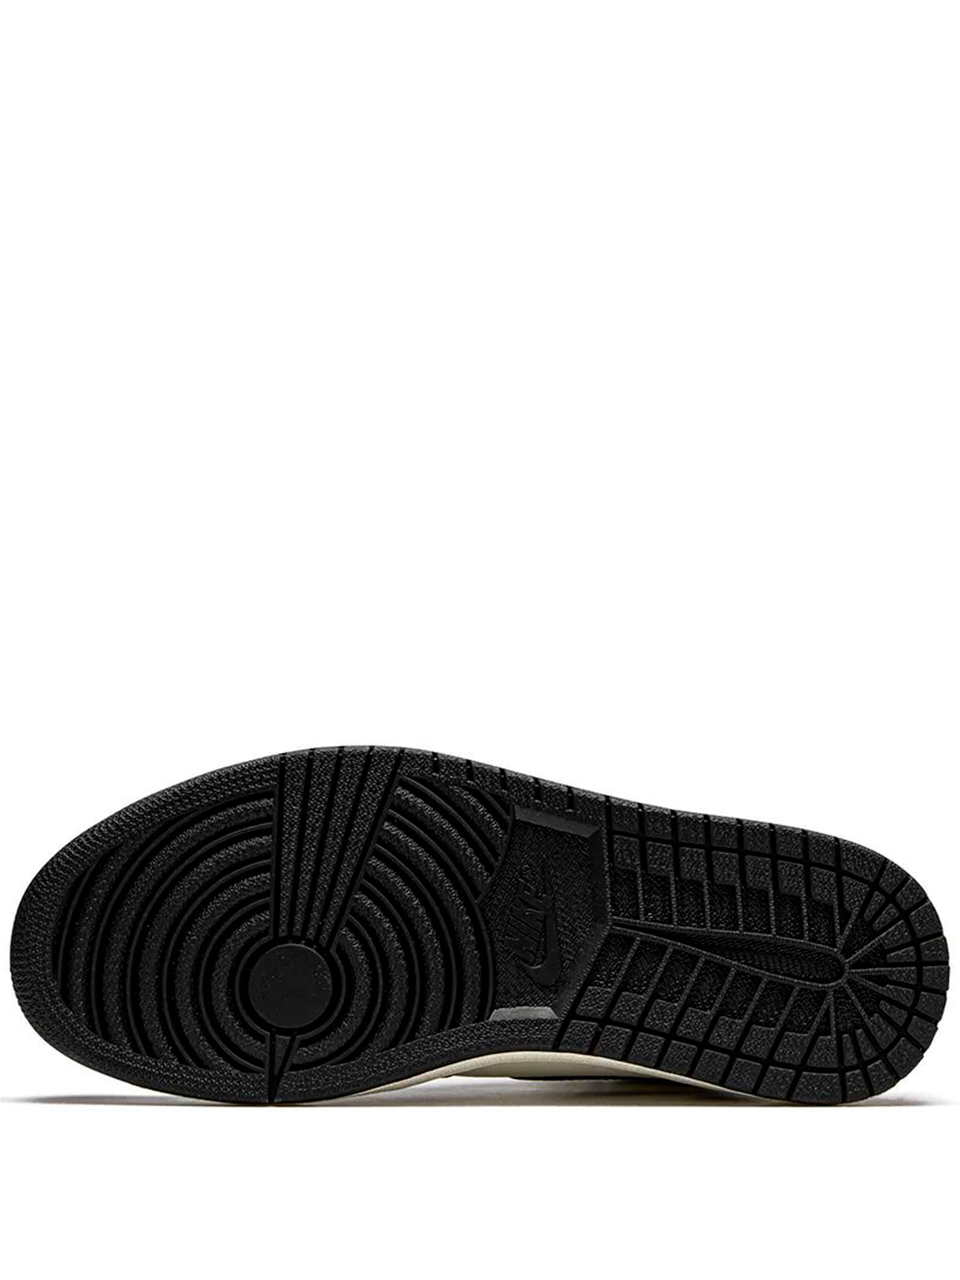 Imagem de: Tênis Nike Air Jordan 10 Dark Mocha Marrom